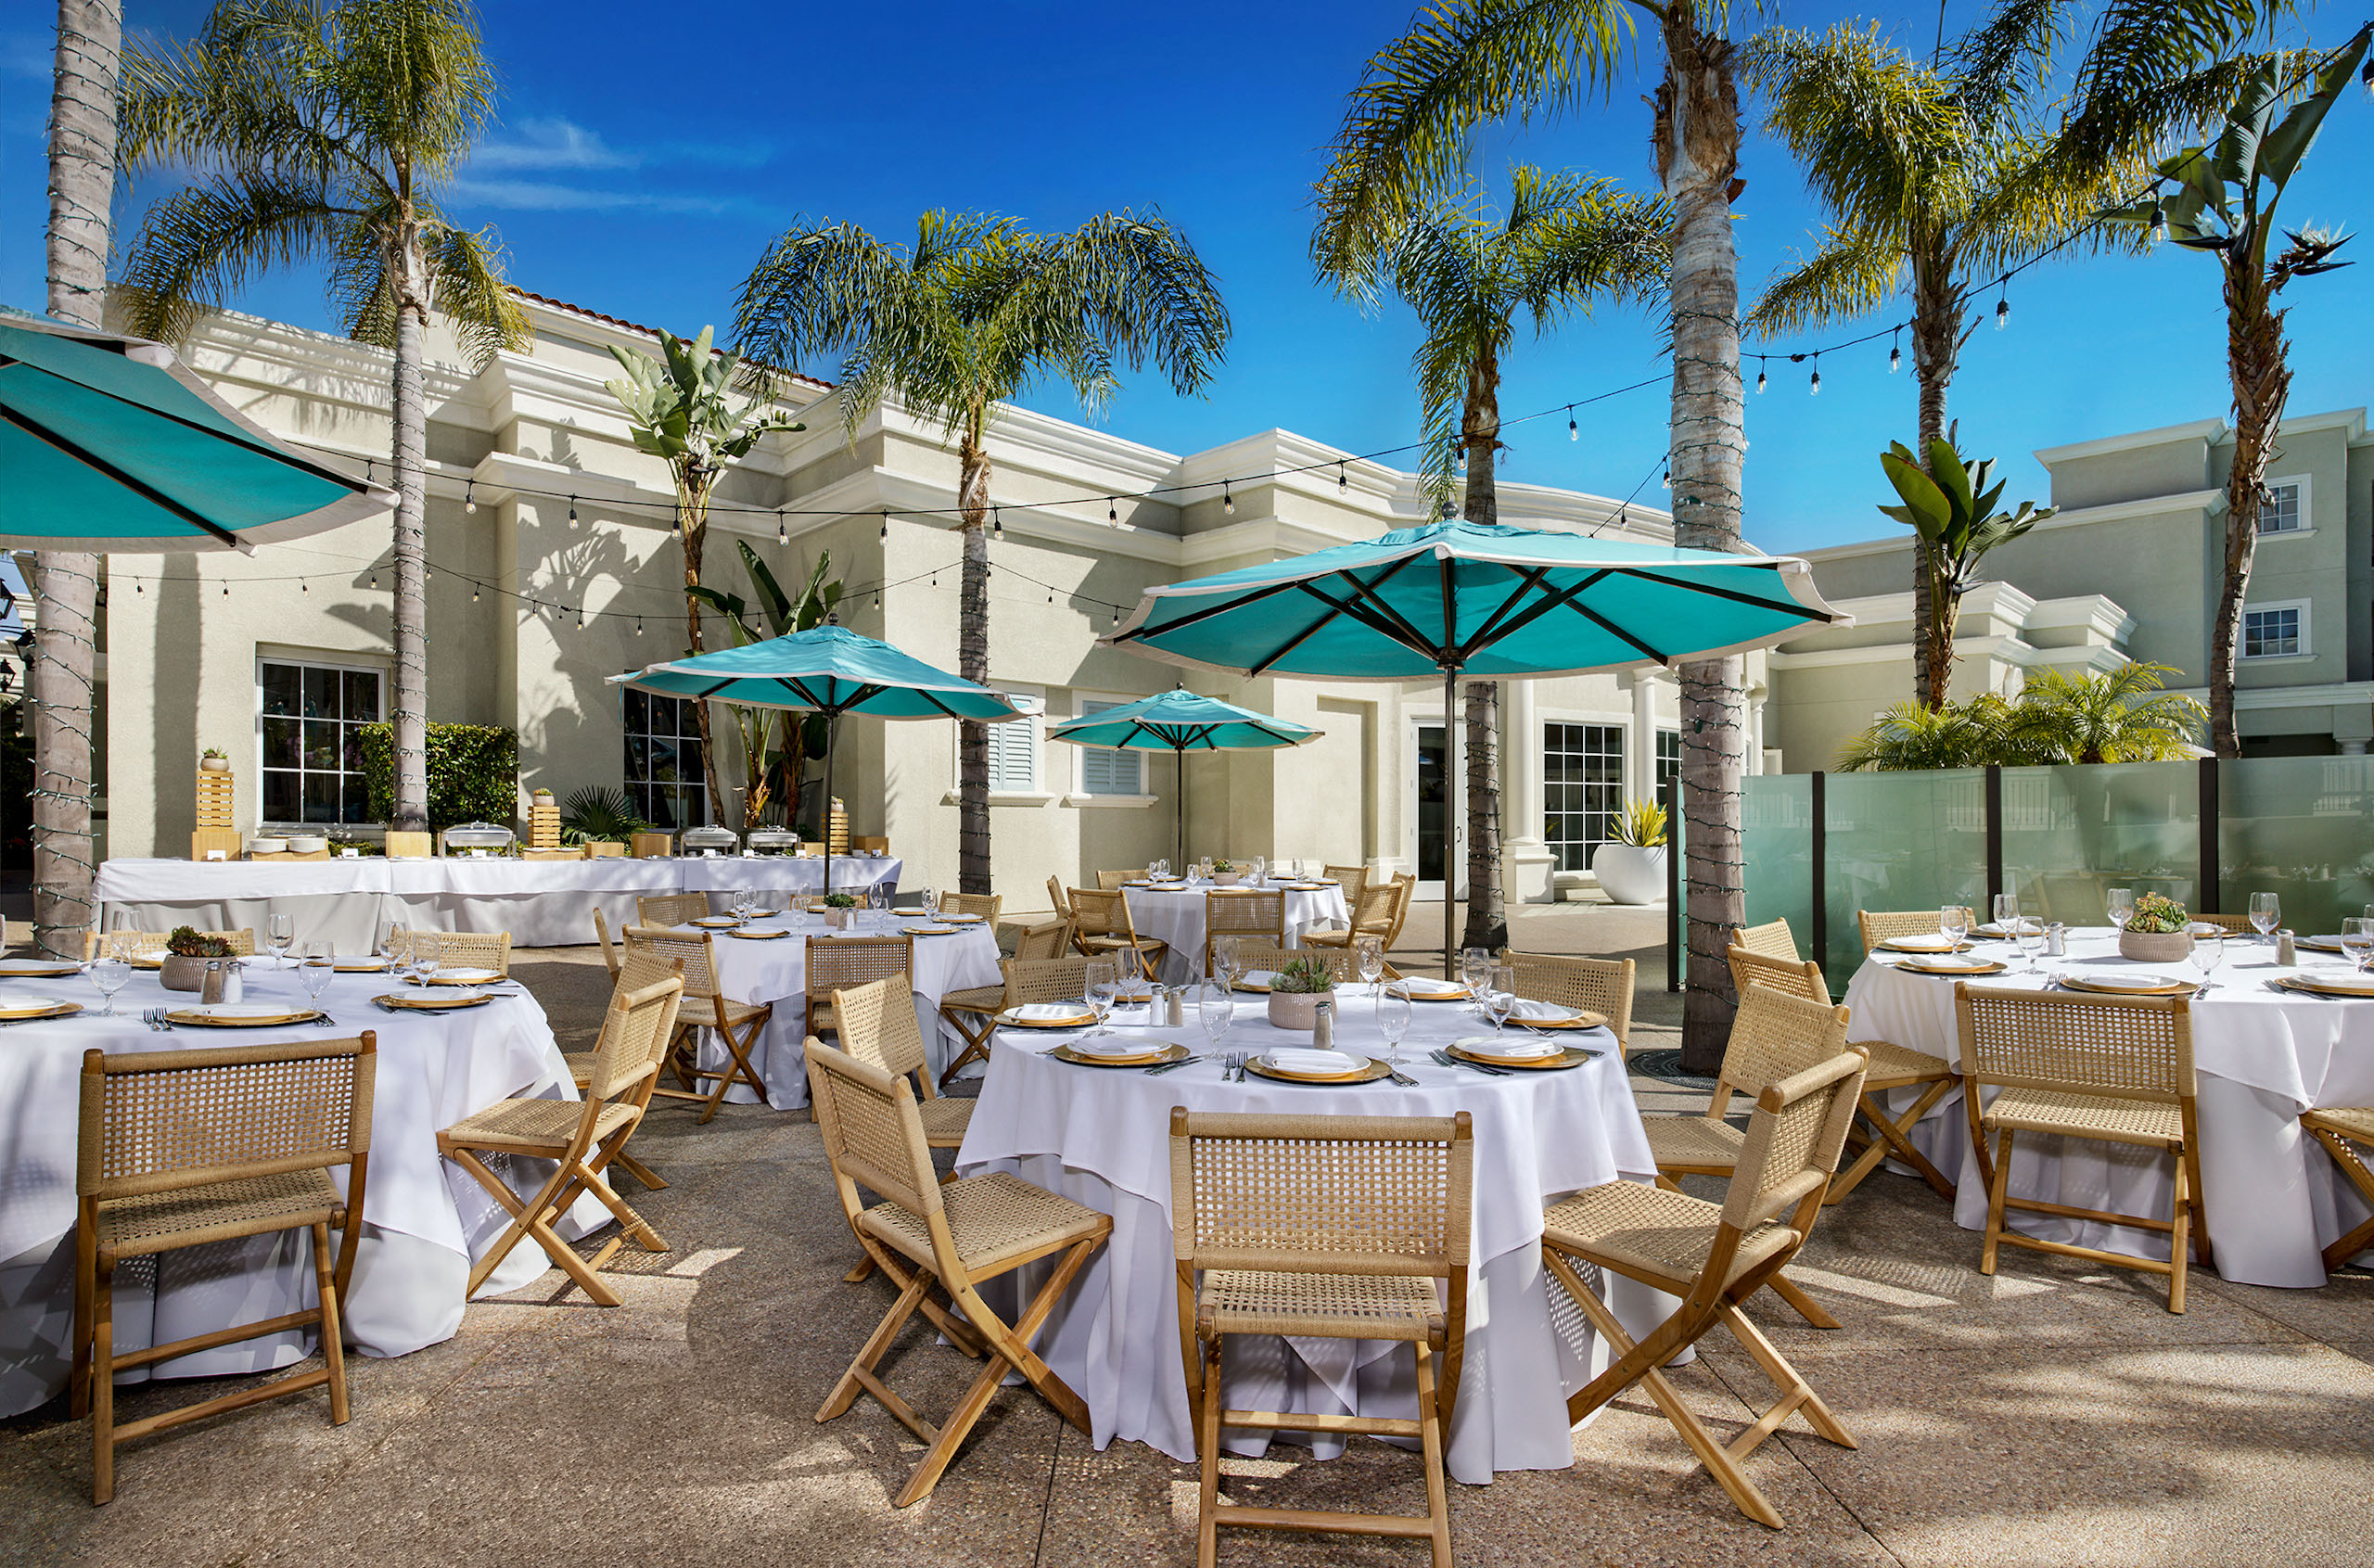 10 Best Restaurants in Newport Beach, California in 2016